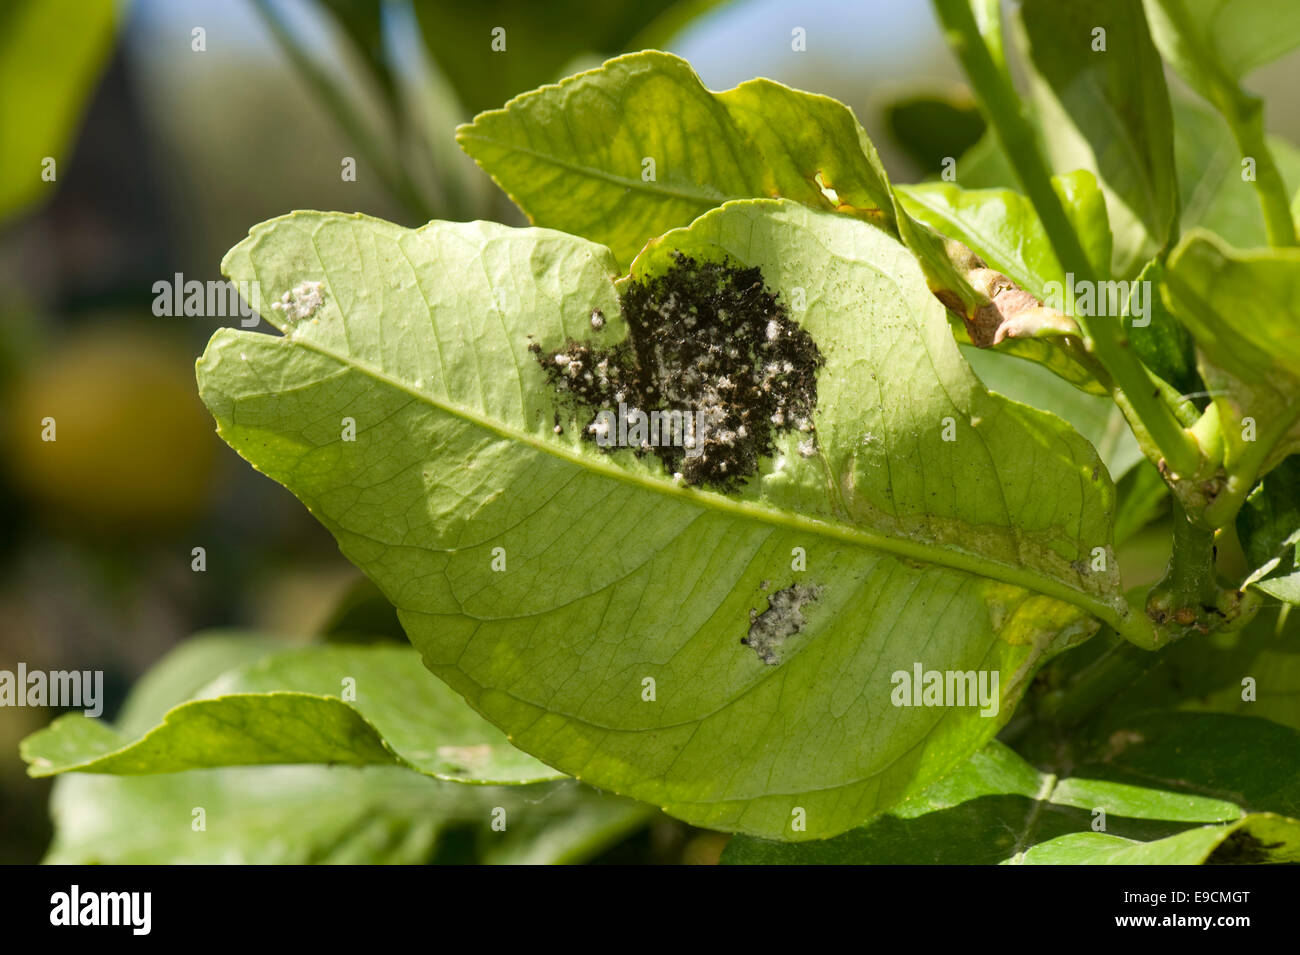 Wollige Mottenschildläuse, Aleurothrixus Floccosus mit rußigen Schimmel auf dem Honigtau auf der Unterseite der Zitrone Blatt eines Baumes in Obst, S Stockfoto